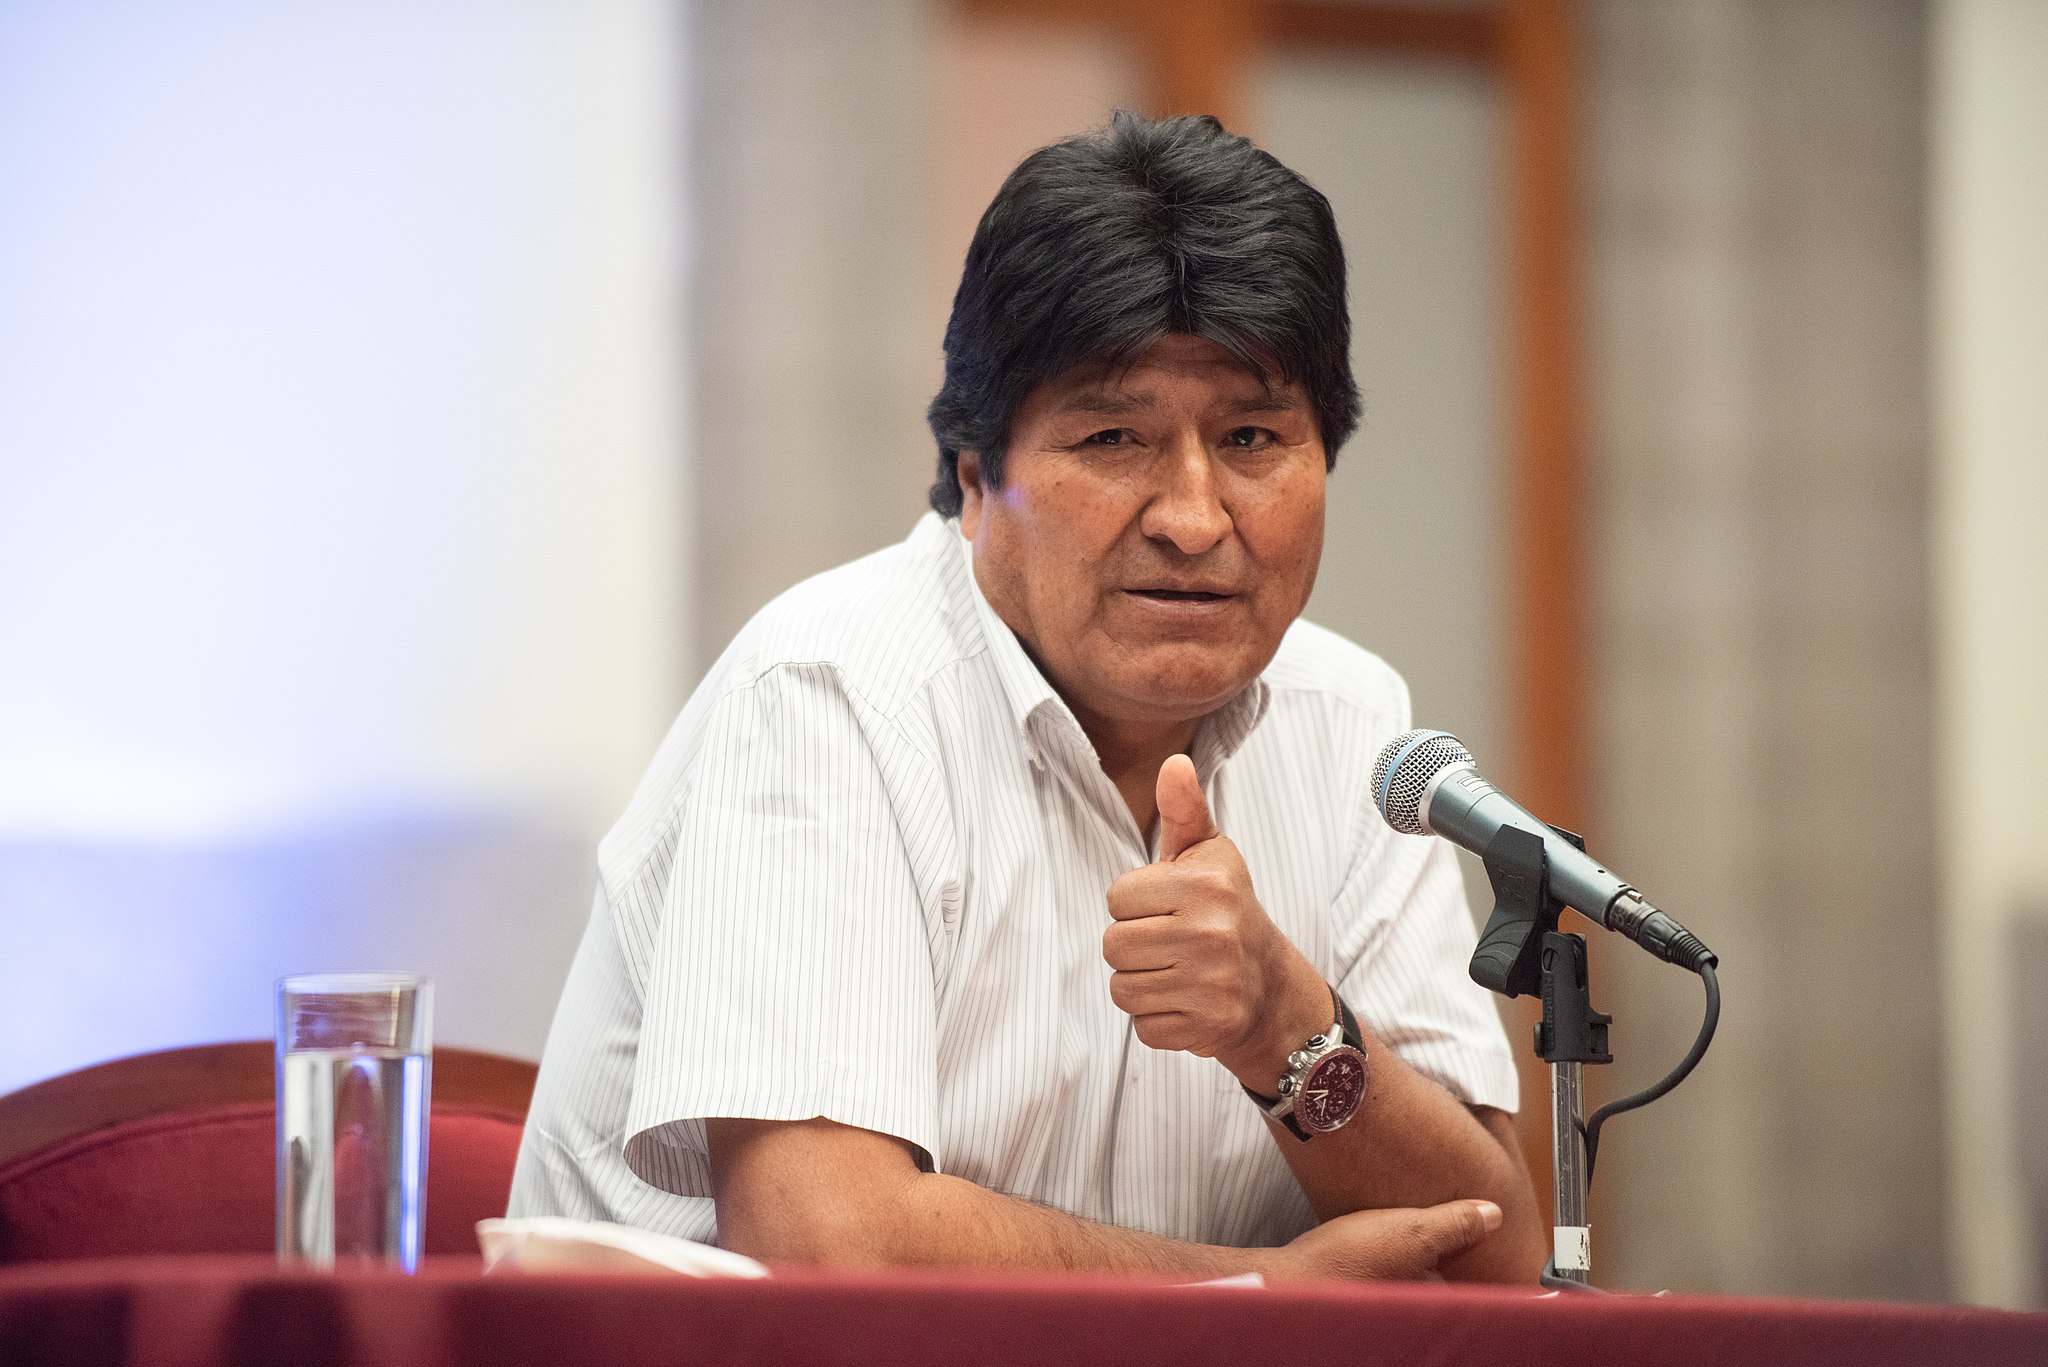 ‘La lucha seguirá’: Evo Morales regresa a Bolivia después de un año en el exilio